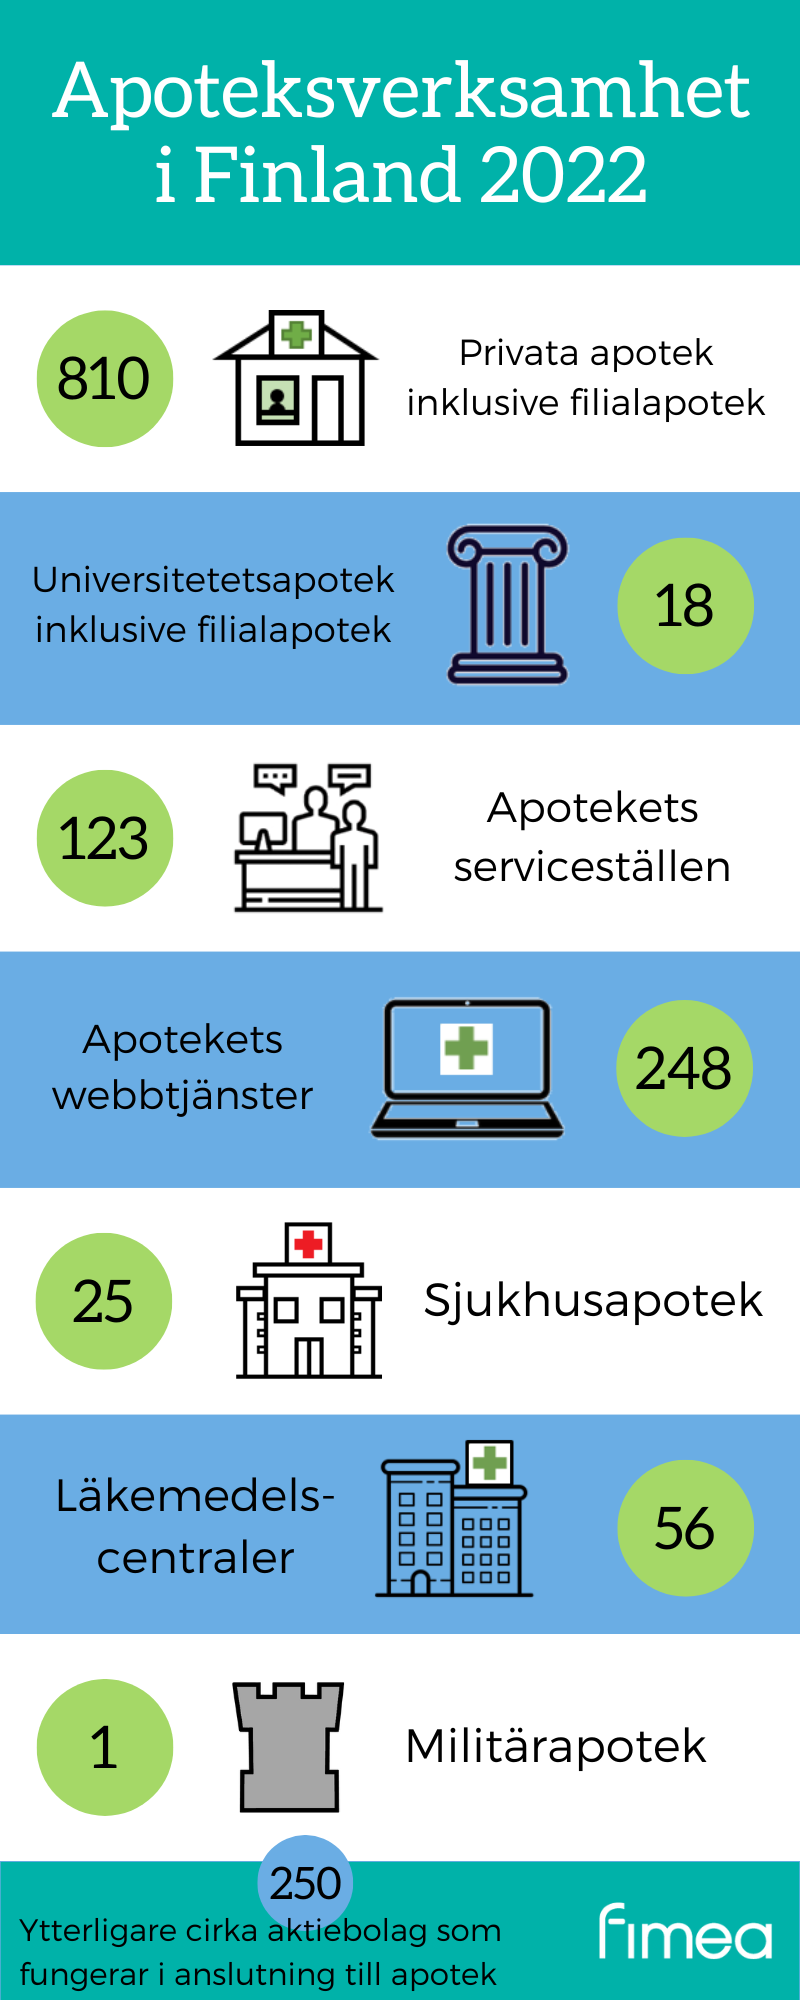 Apoteksverksamhet i Finland 2022: 810 privata apotek inklusive filialapotek, 18 universitetetsapotek inklusive filialapotek, 123 apotekets serviceställen, 248 apotekets webbtjänster, 25 sjukhusapotek, 56 läkemedelscentraler och 1 militärapotek. Ytterligare cirka 250 som fungerar i anslutning till apotek.